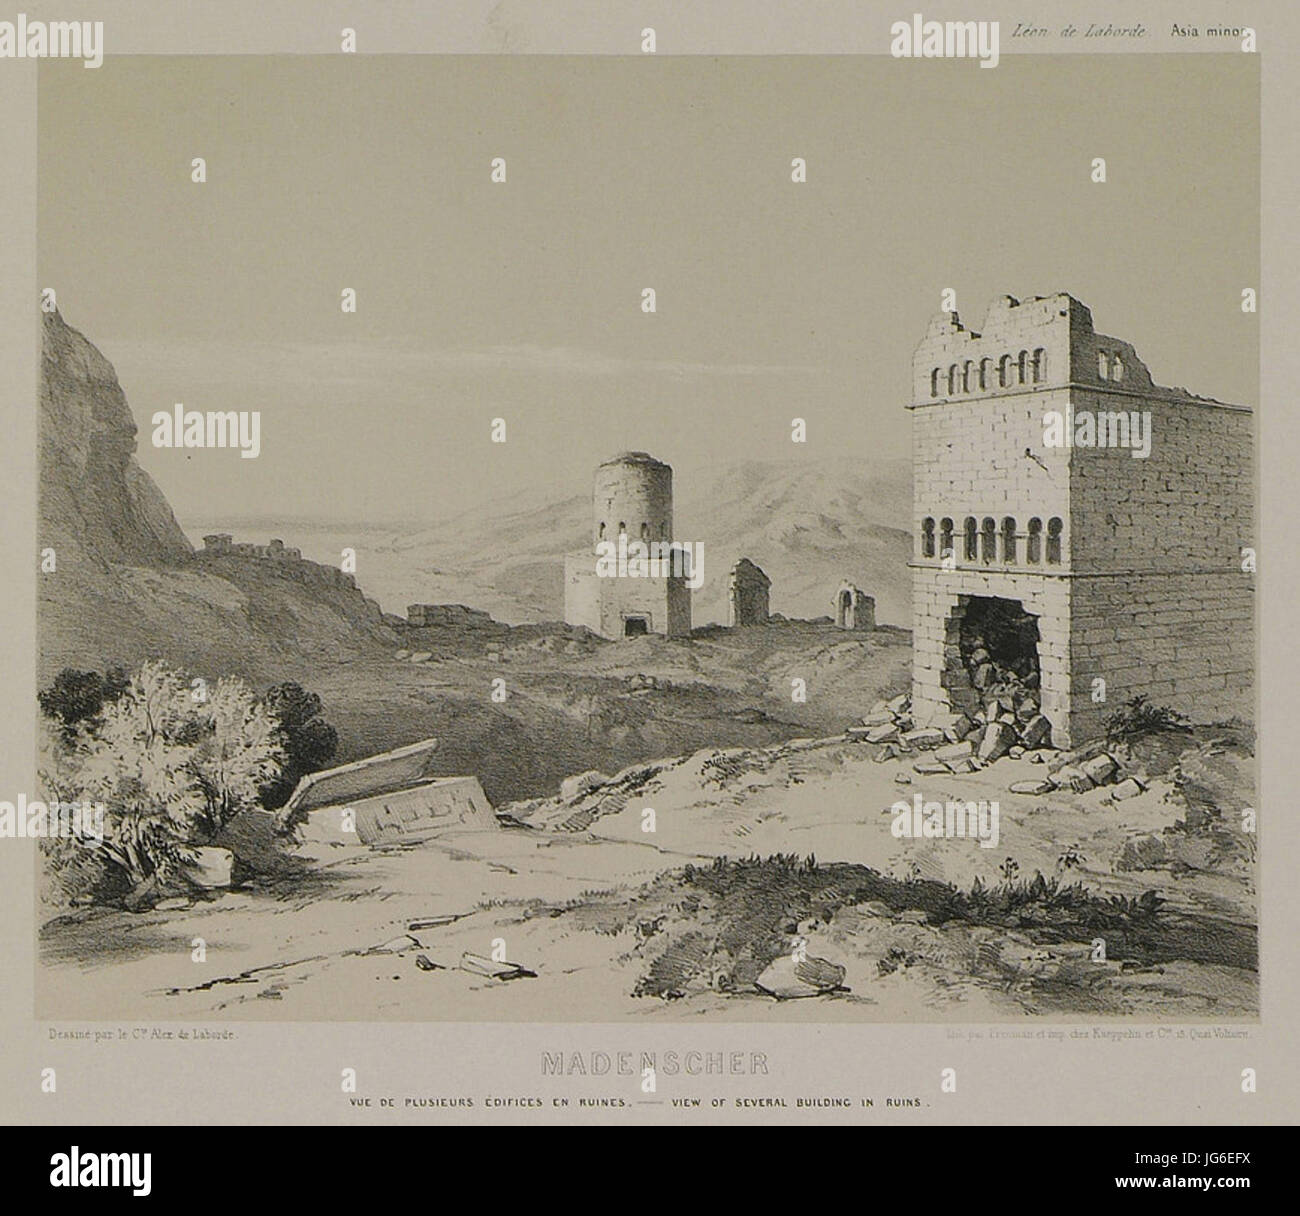 Madensher Vue des plusieurs édifices en ruines - Laborde Léon Emmanuel Simon Joseph - 1838 Stock Photo